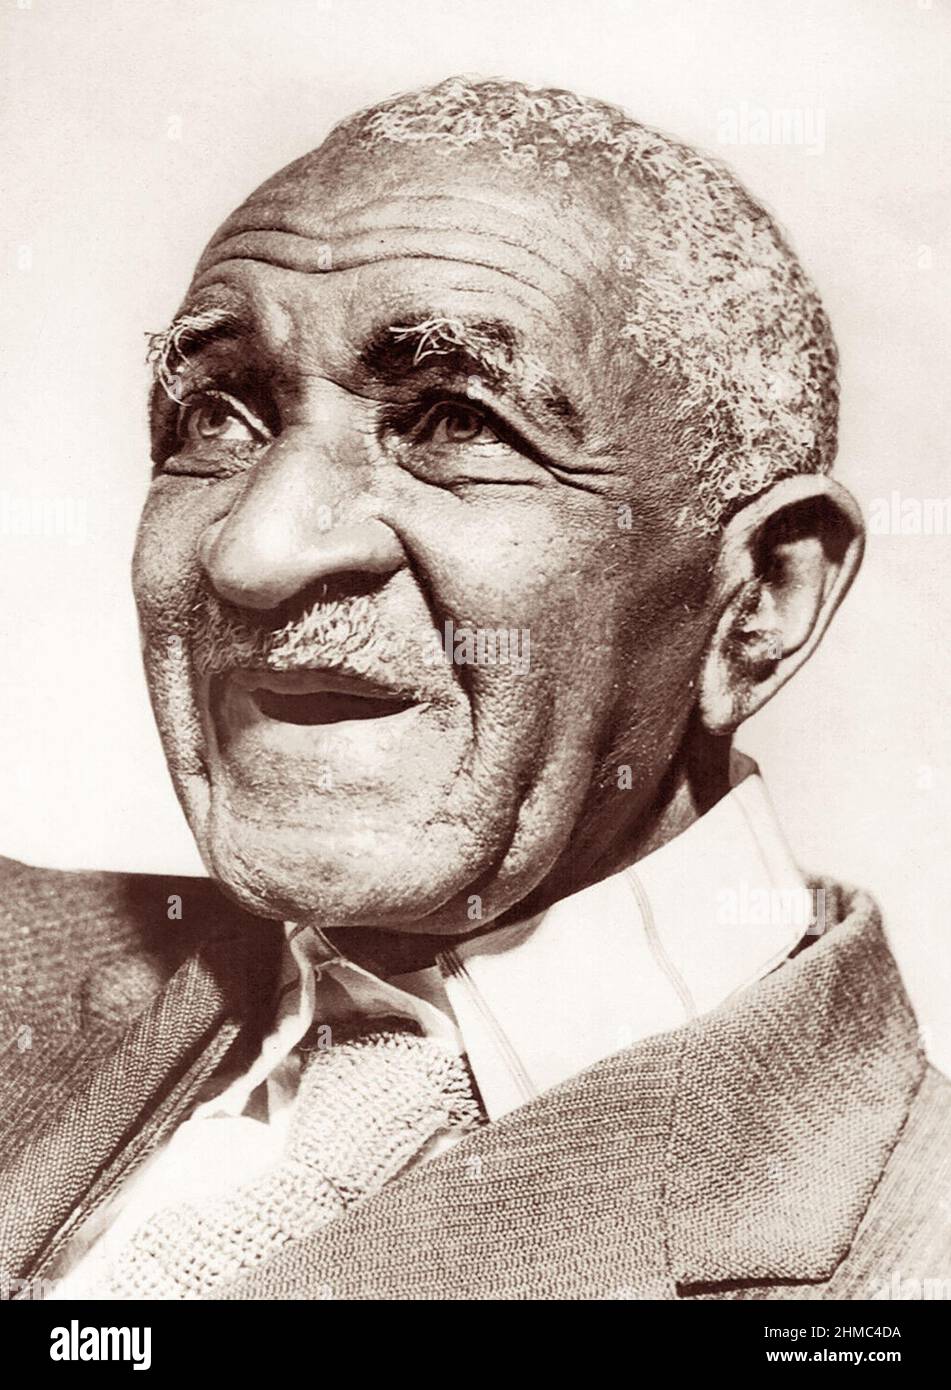 George Washington Carver (c1864-1943), científico agrícola estadounidense, inventor y profesor en el Instituto Tuskegee en Tuskegee, Alabama. Foto: 1943. (EE. UU.) Foto de stock